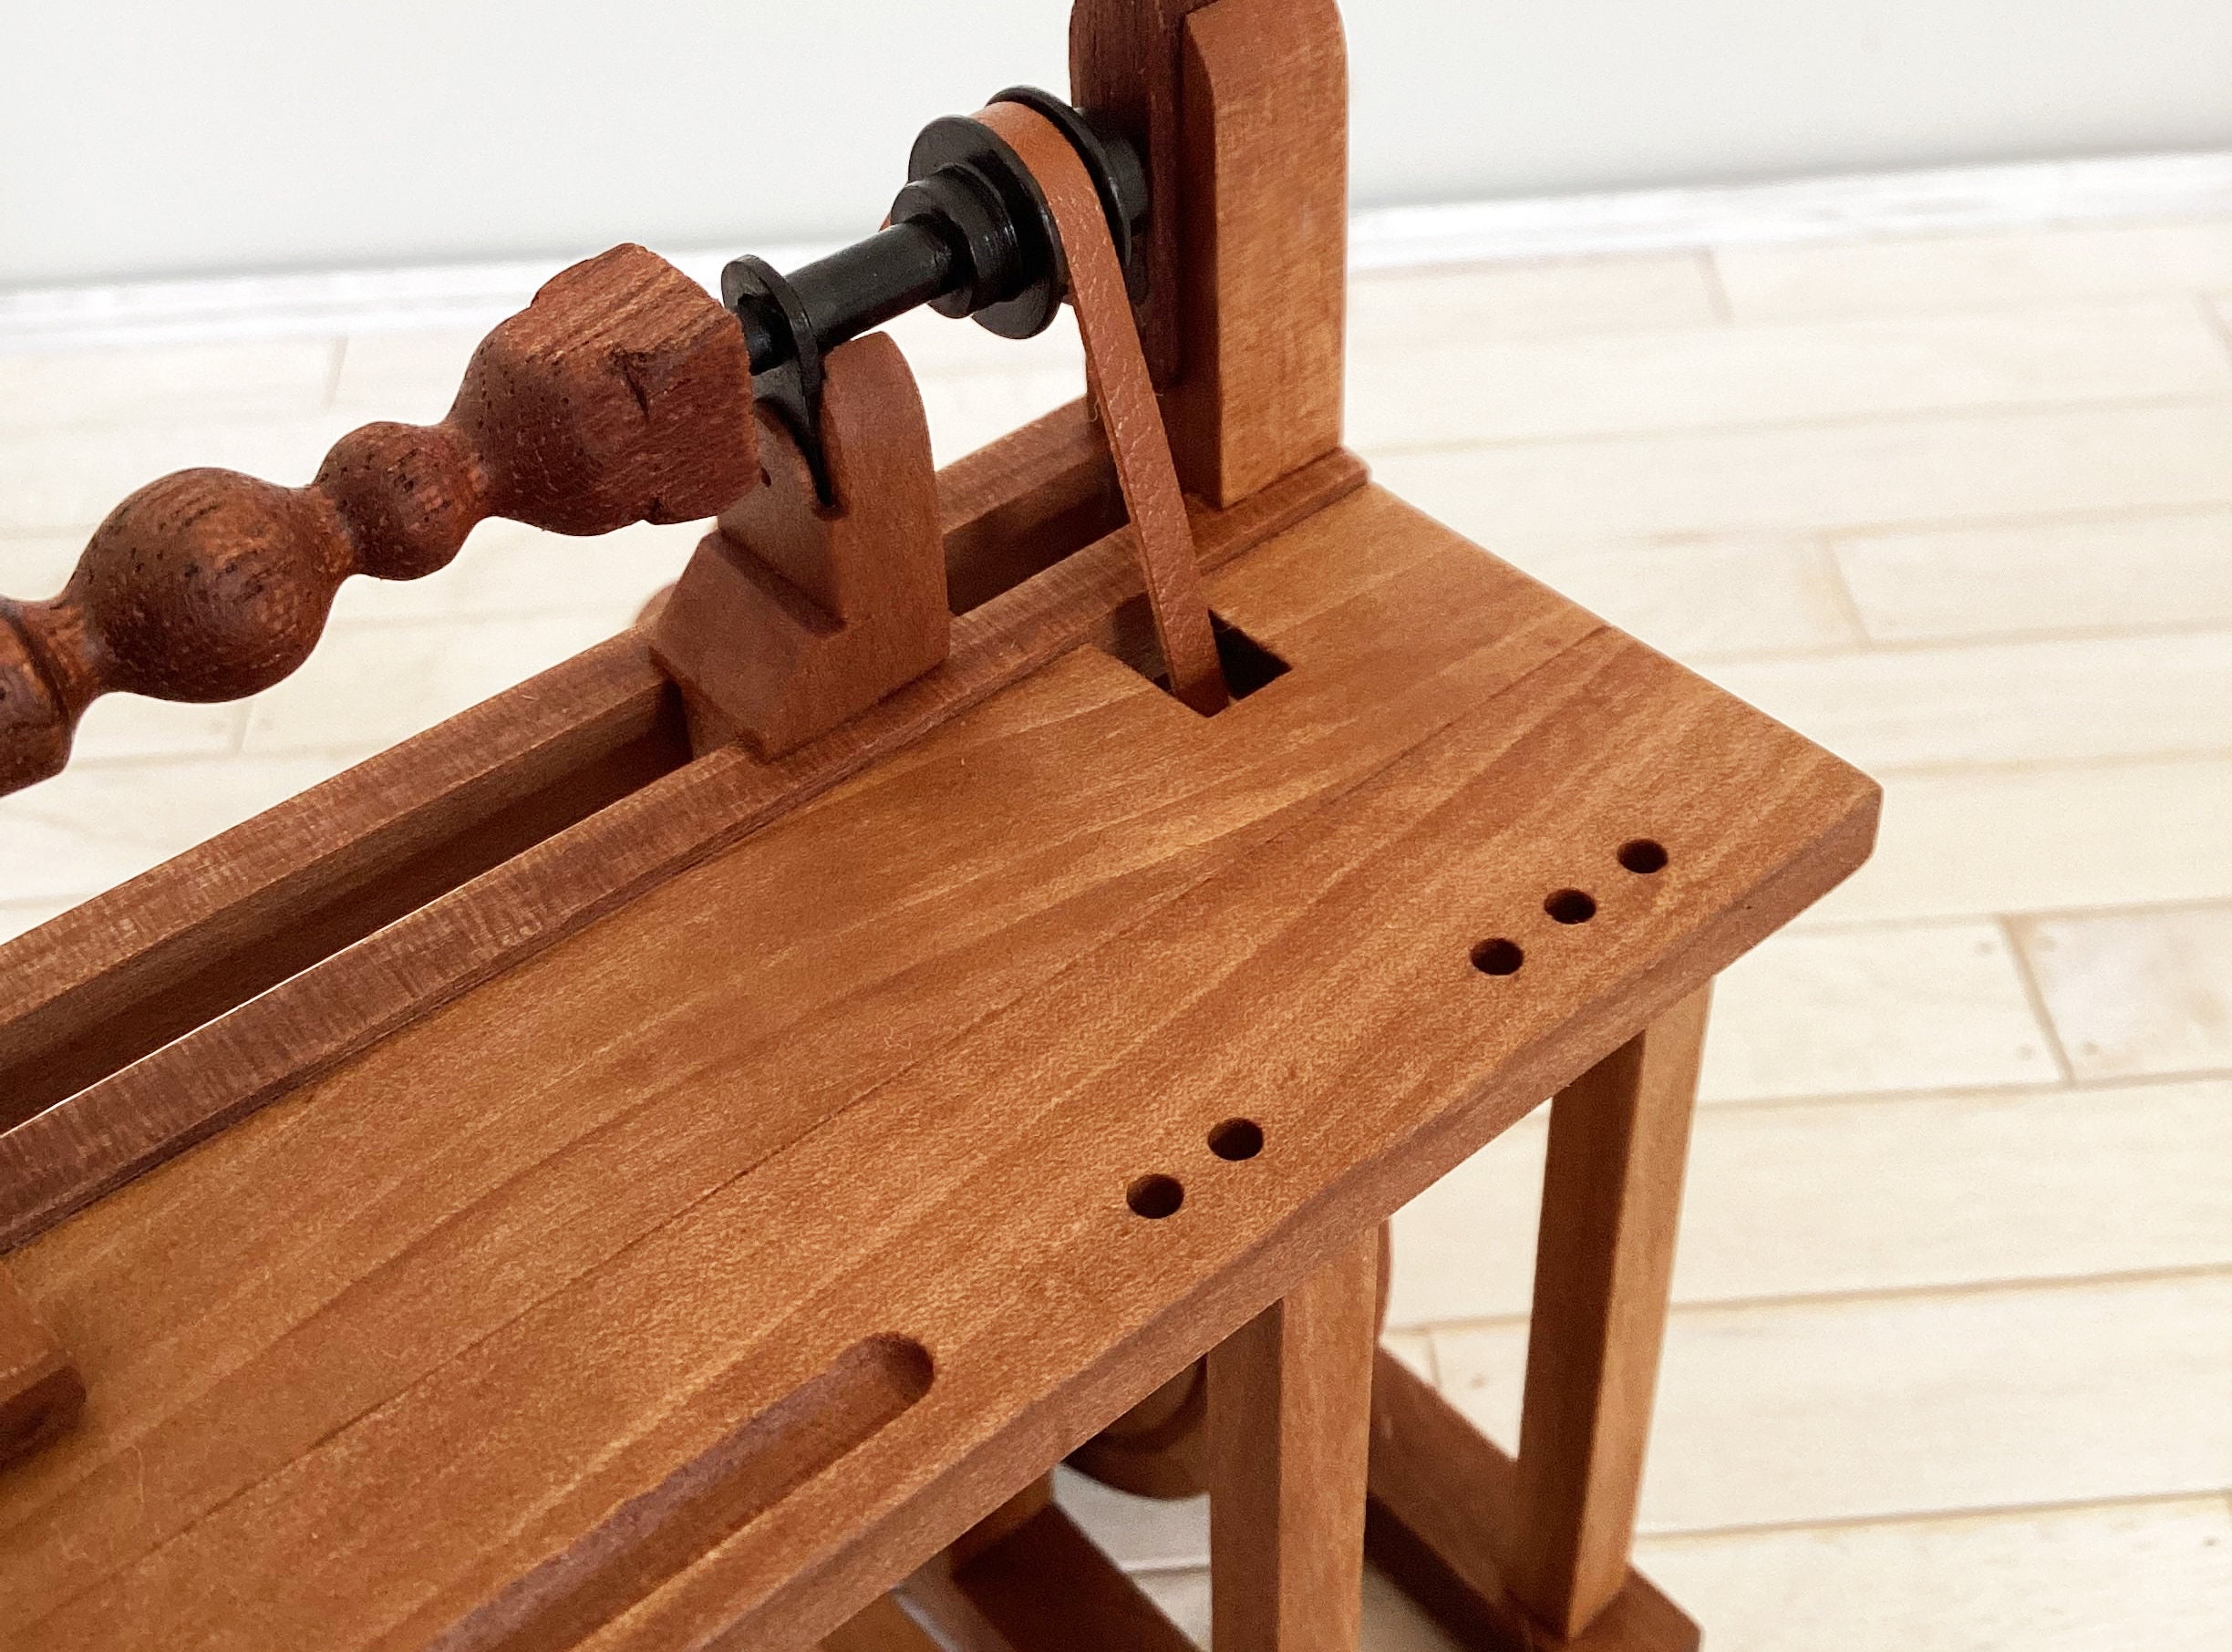 Portable Midi Wood Lathe / Mini tour à bois transportable  Atelier du  Bricoleur (menuiserie)…..…… Woodworking Hobbyist's Workshop